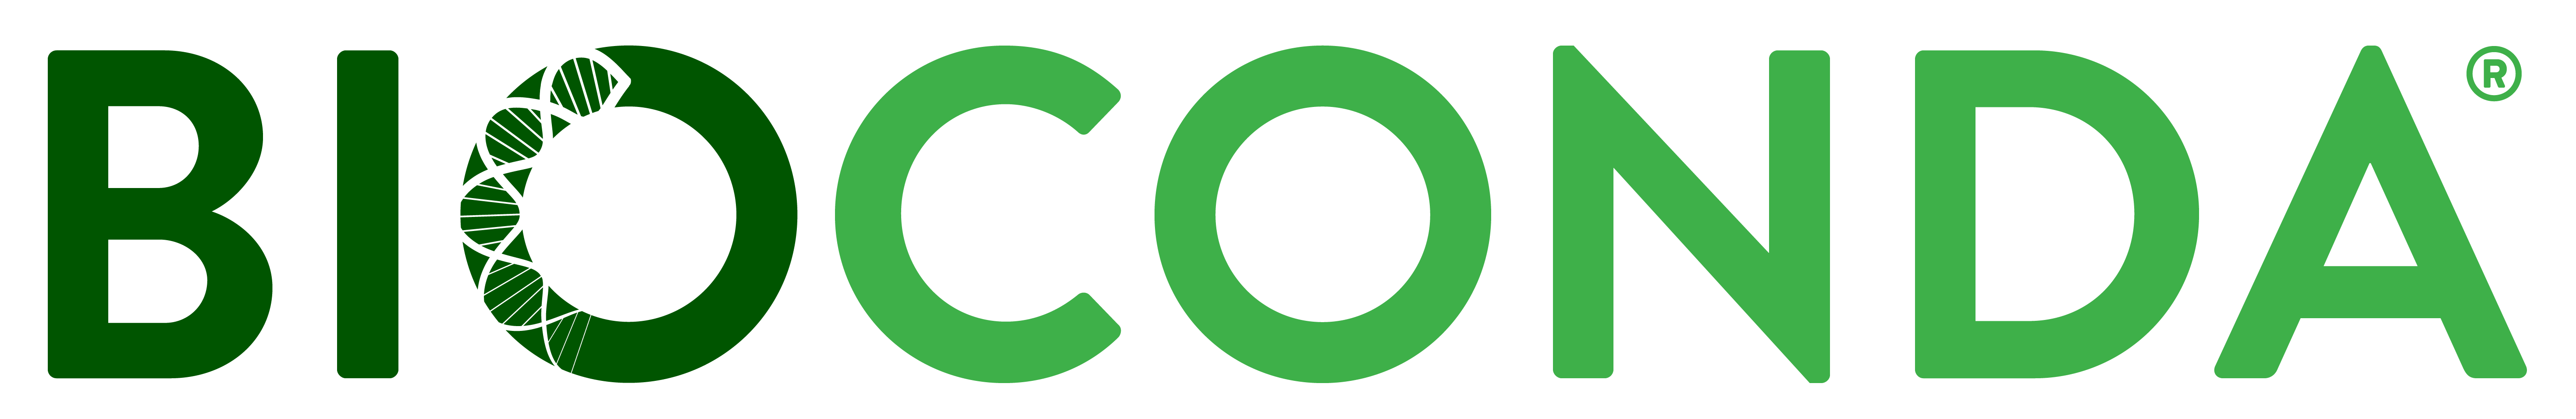 bioconda logo